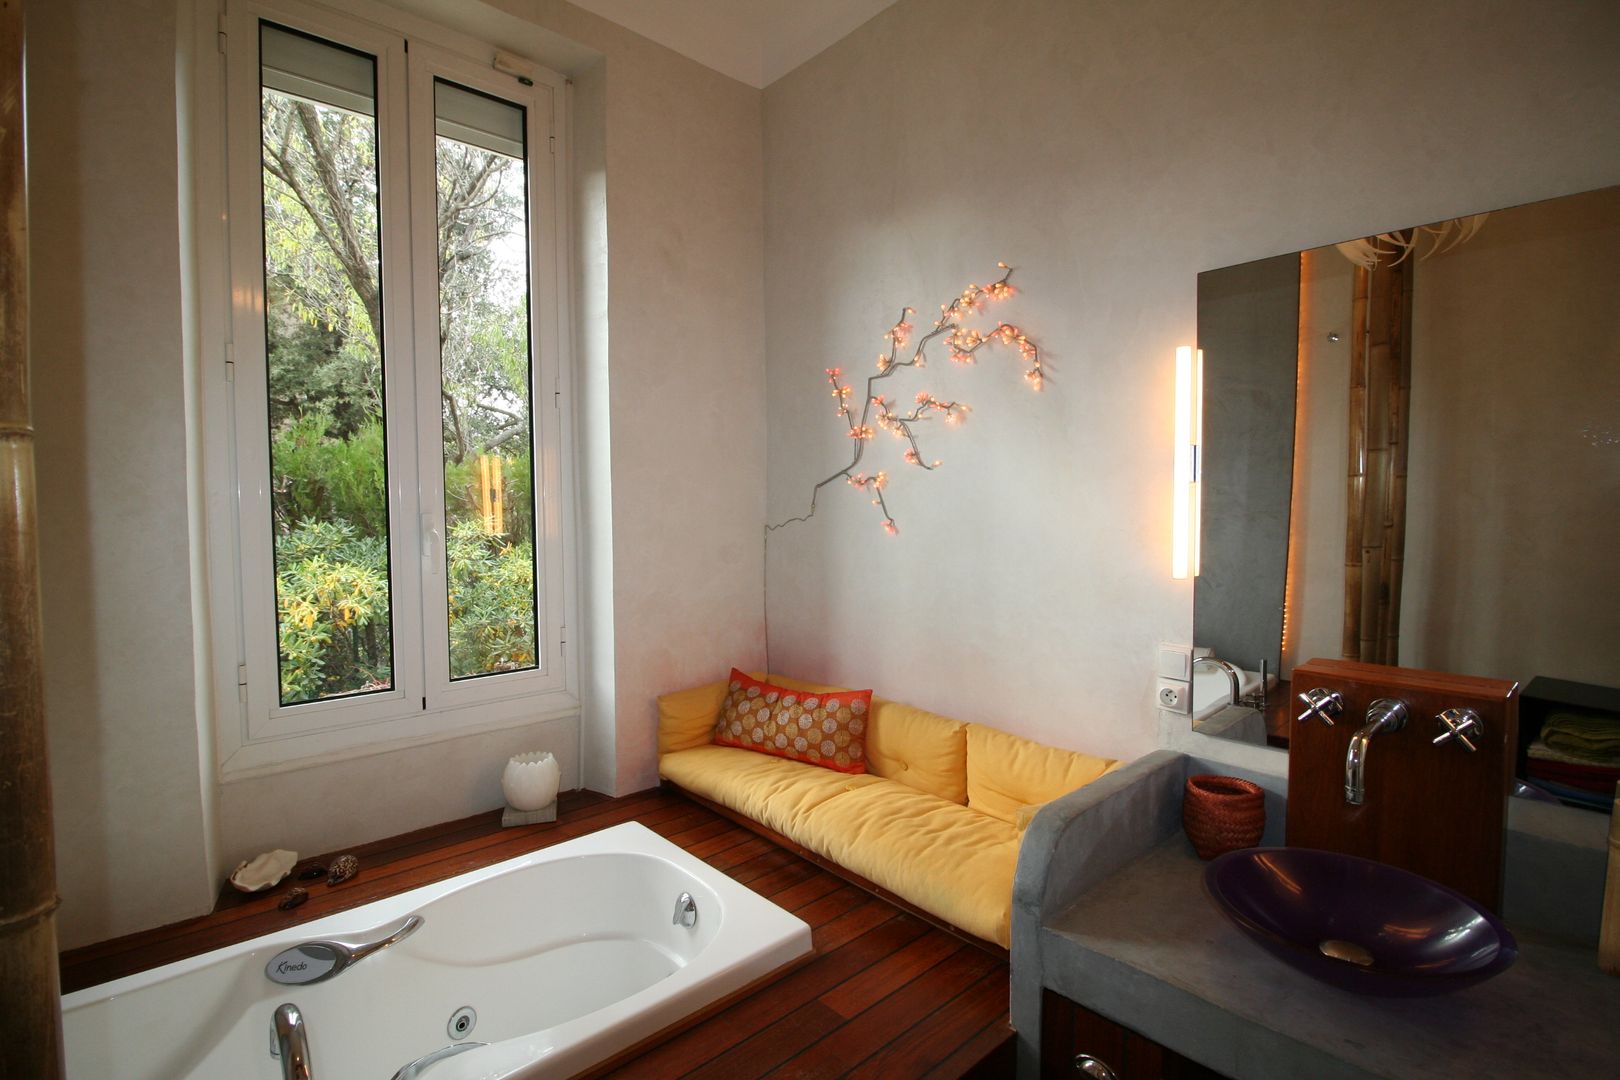 Salle de bain avec vue sur la verdure, LM Interieur Design LM Interieur Design Asian style bathroom